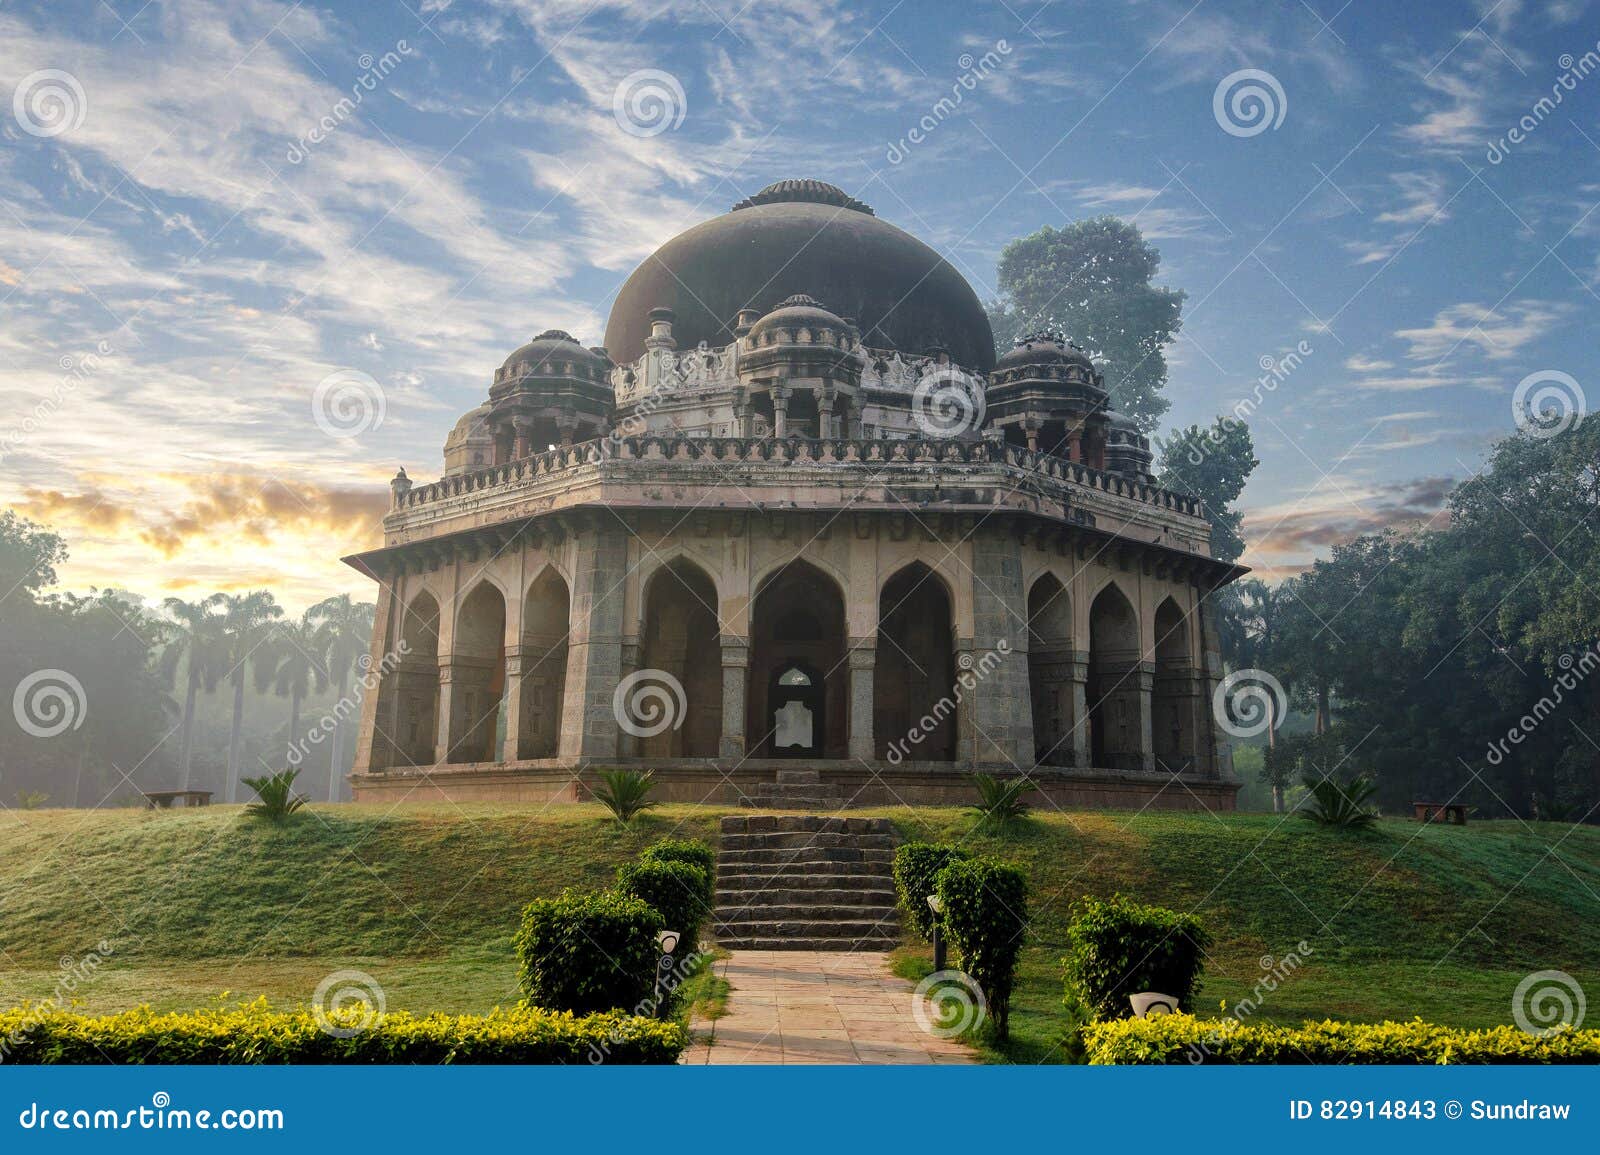 muhammad shah sayyidÃ¢â¬â¢s tomb at early morning in lodi garden monuments